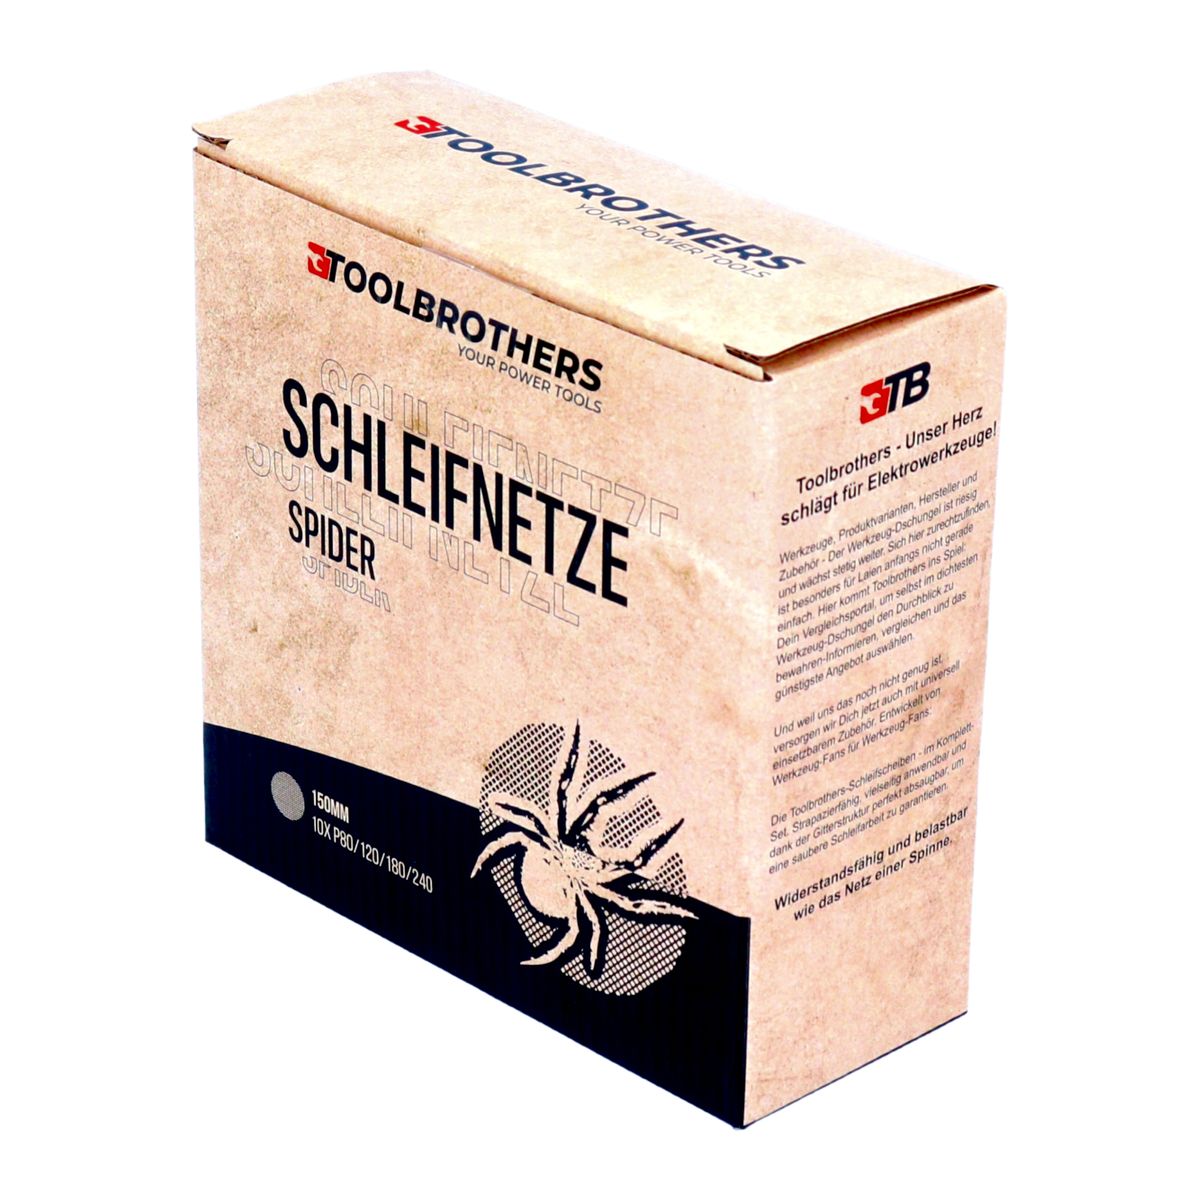 Toolbrothers SPIDER Schleifset Netz 150 mm 2 Packungen 80x Schleifnetze Klett je 20x P80 / P120 / P180 / P240 für Hartholz, Weichholz, Lack, Stein, Stahl, Aluminium, Furnier - Toolbrothers